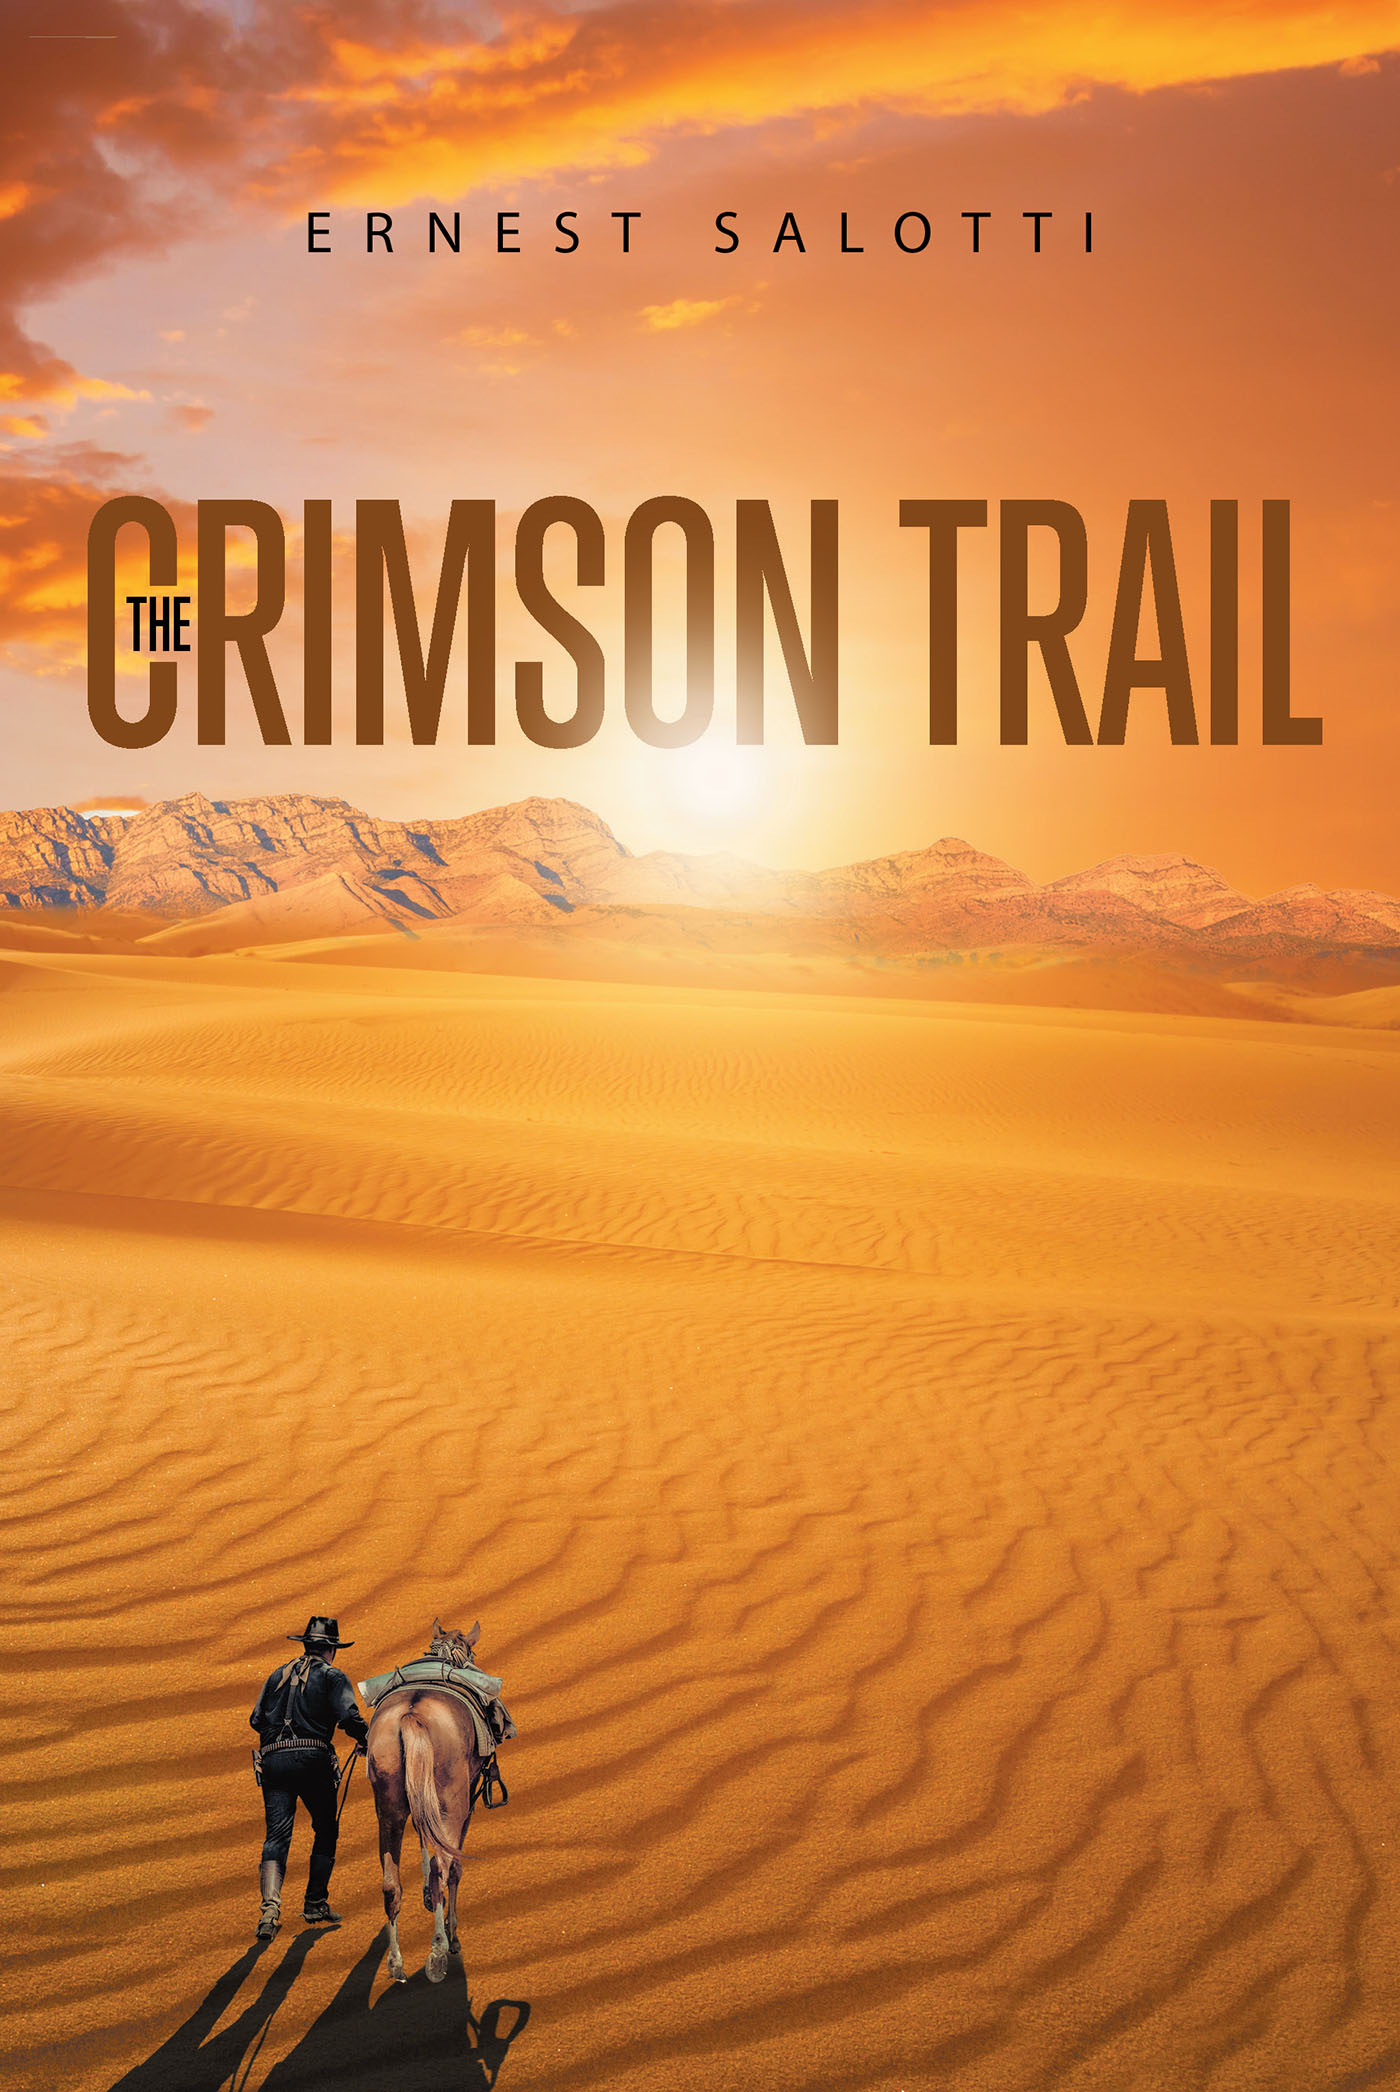 The Crimson Trail Cover Image